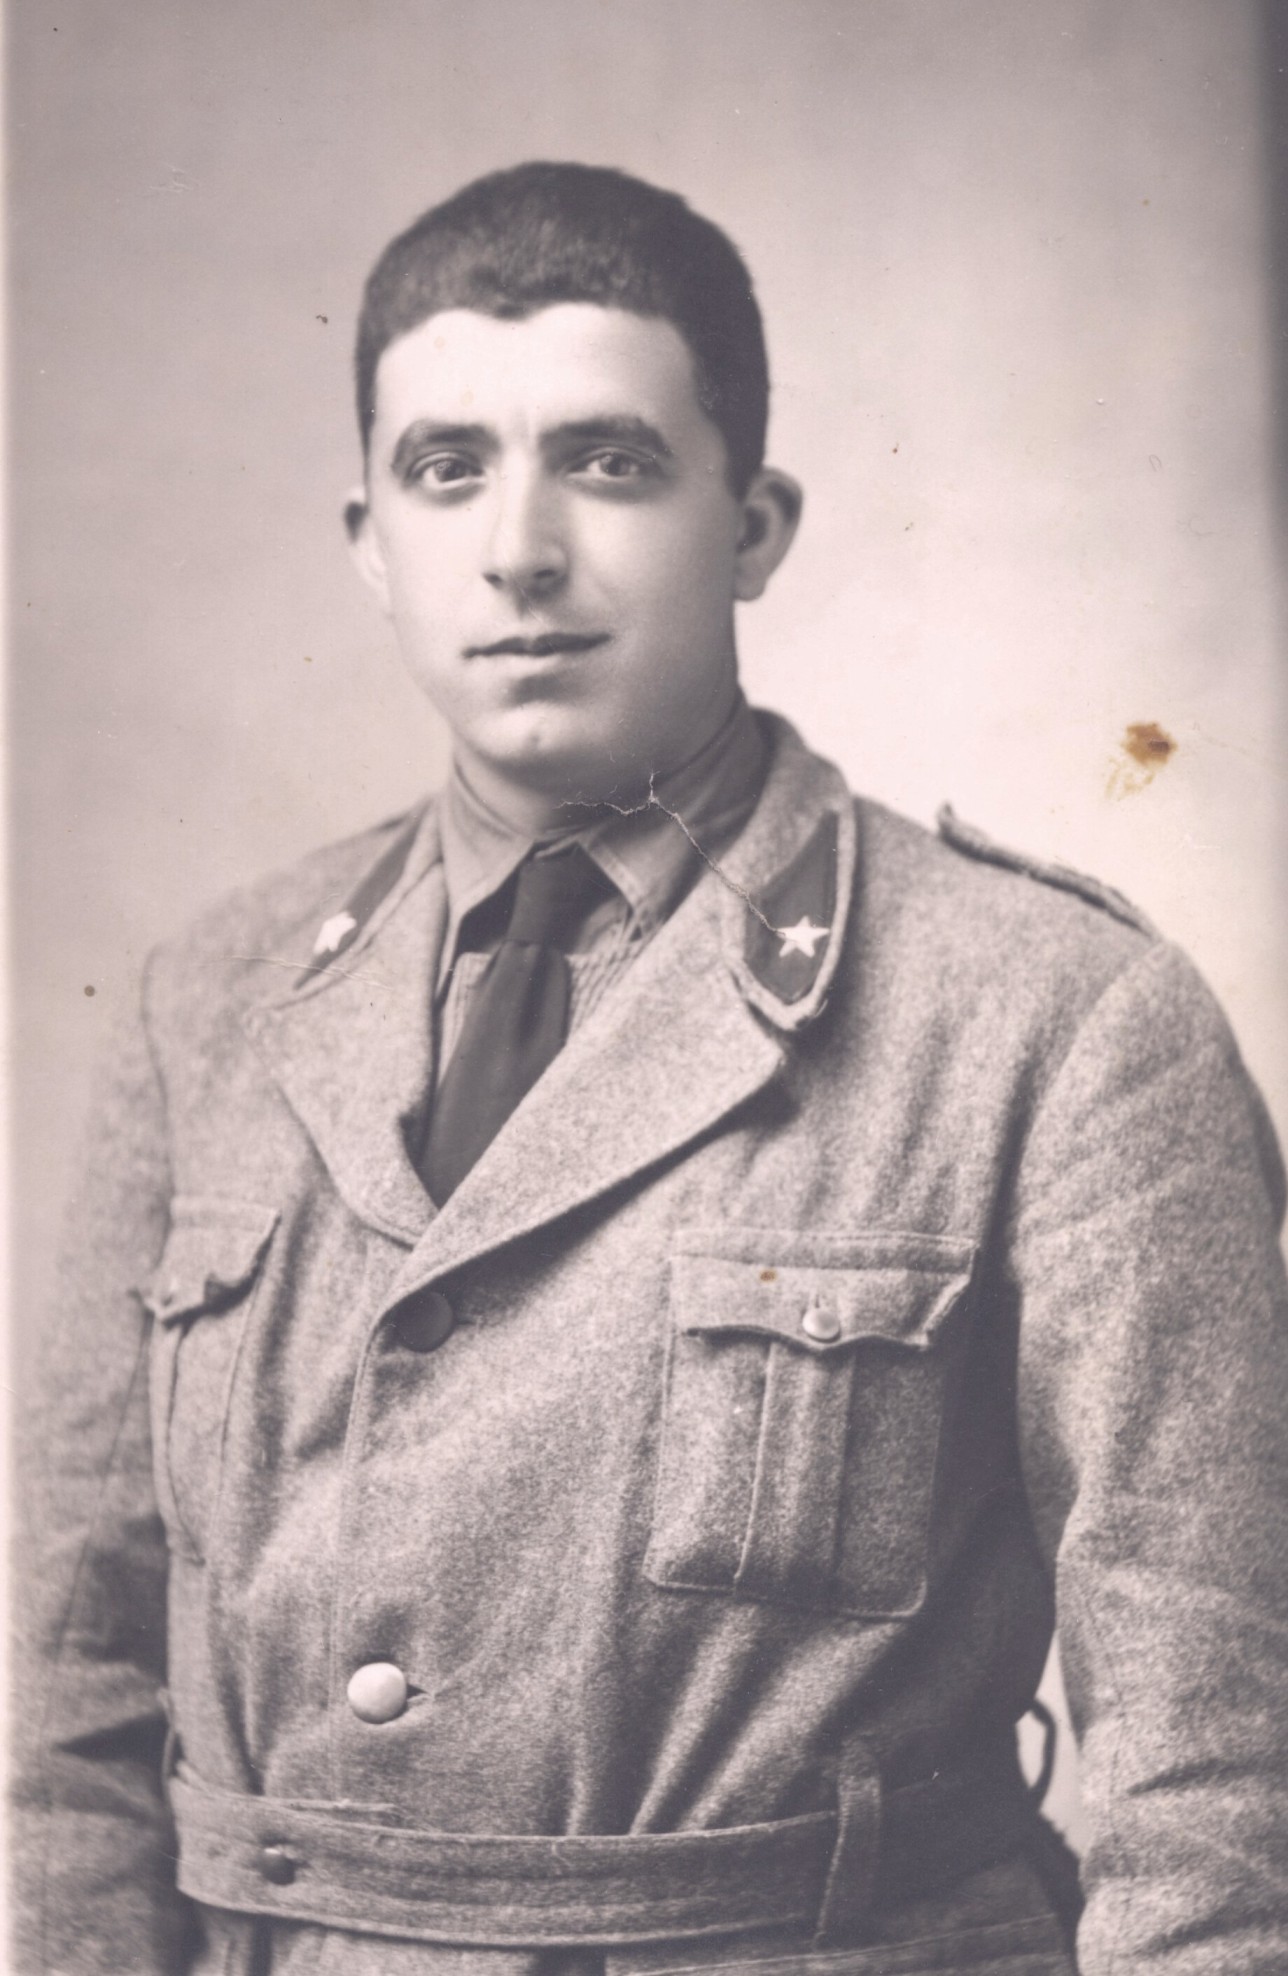 Soldato 1941